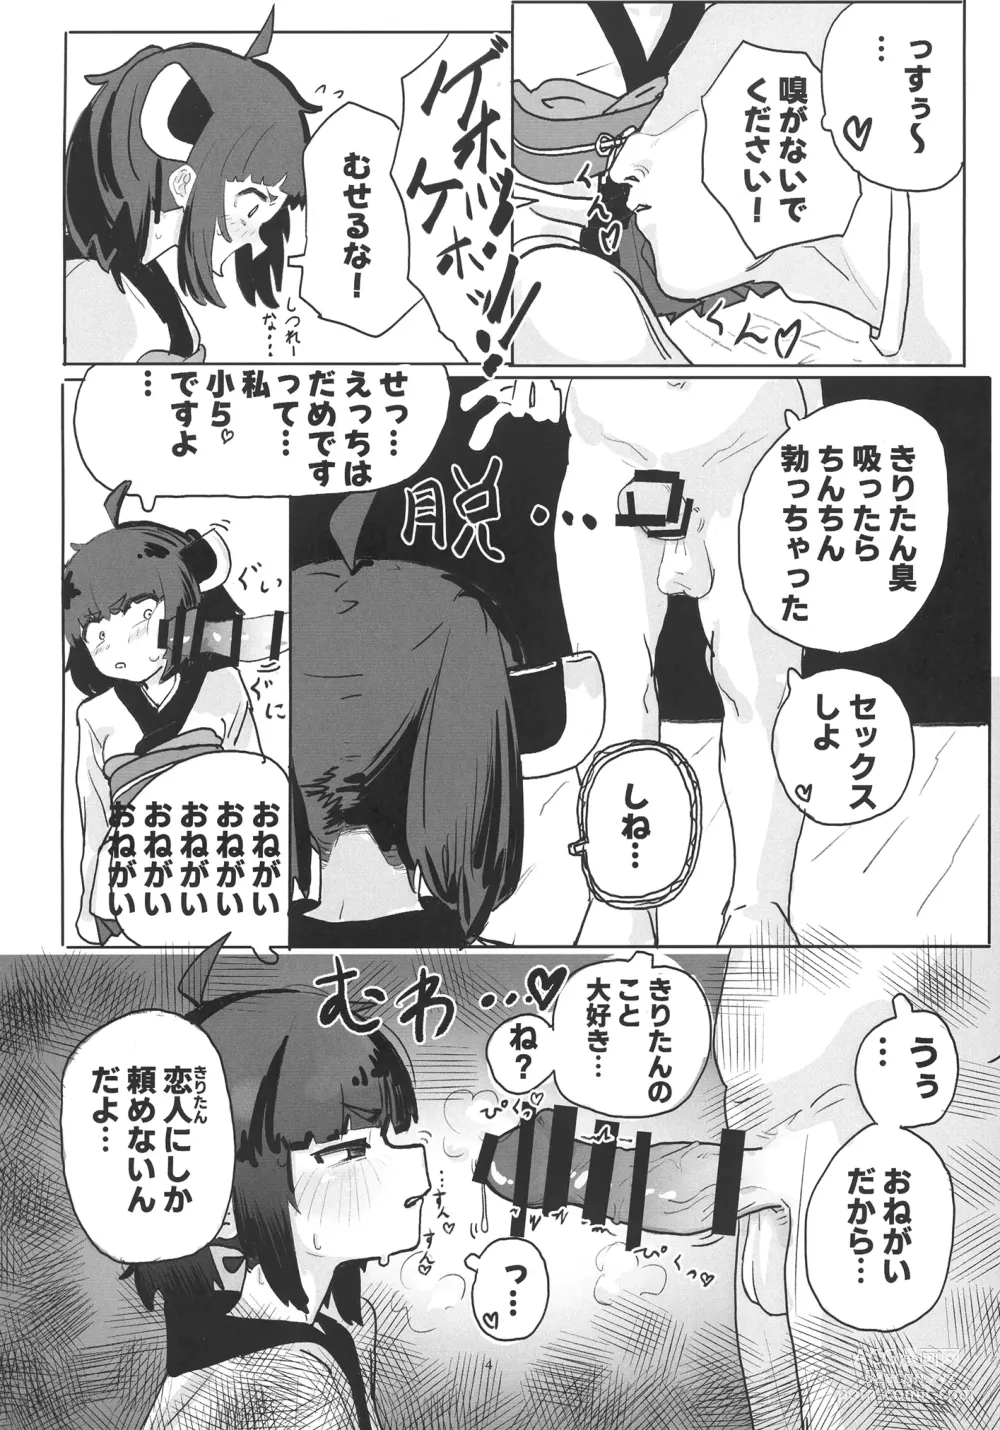 Page 4 of doujinshi Kiri tanto etchi shitai!